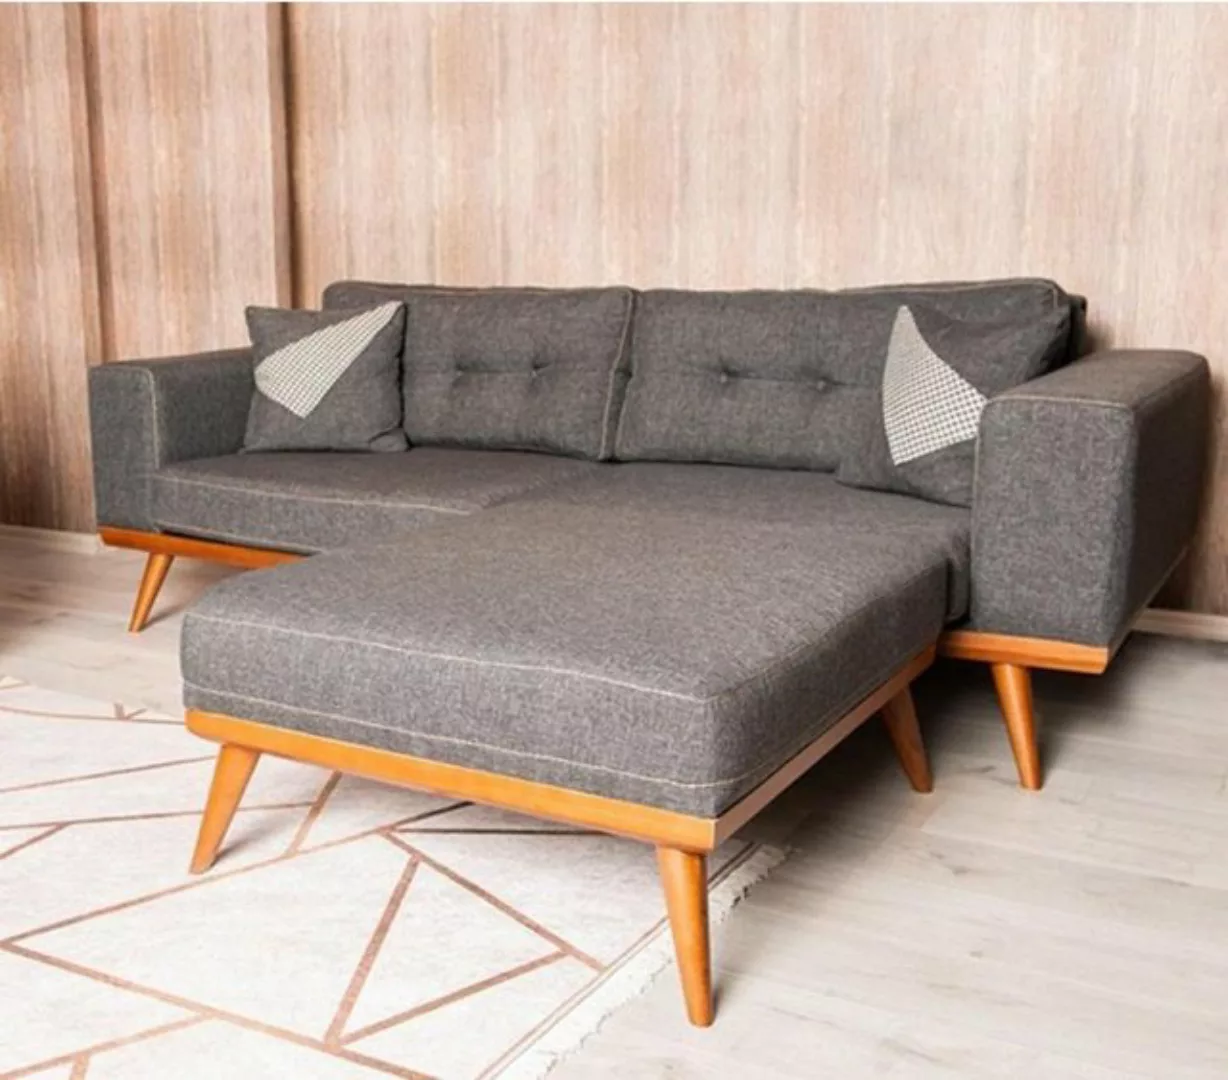 JVmoebel 3-Sitzer Graue Wohnzimmer Edle Couch Sitzgruppe Luxus Möbel Modern günstig online kaufen